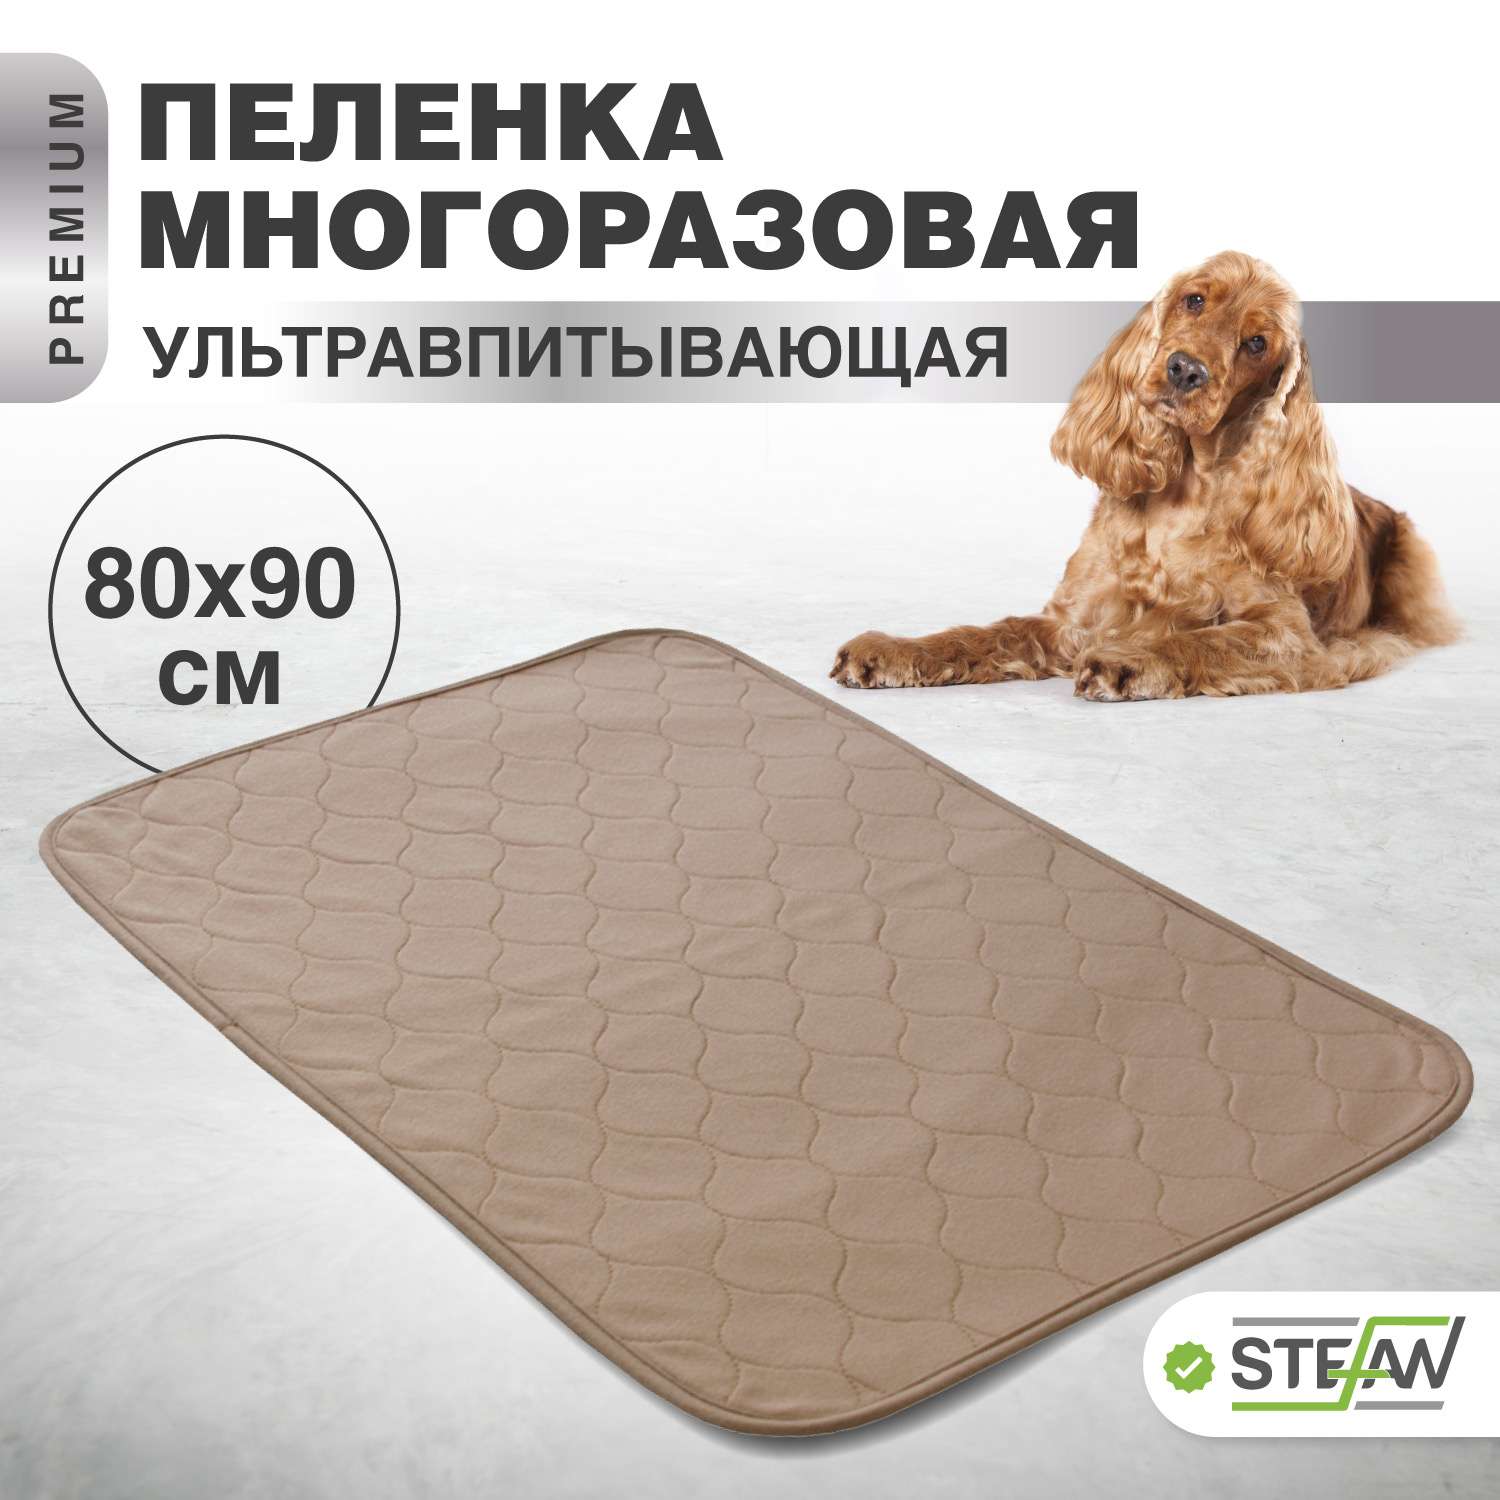 Пеленка для животных Stefan впитывающая многоразовая коричневая однотонная 80х90 см - фото 1